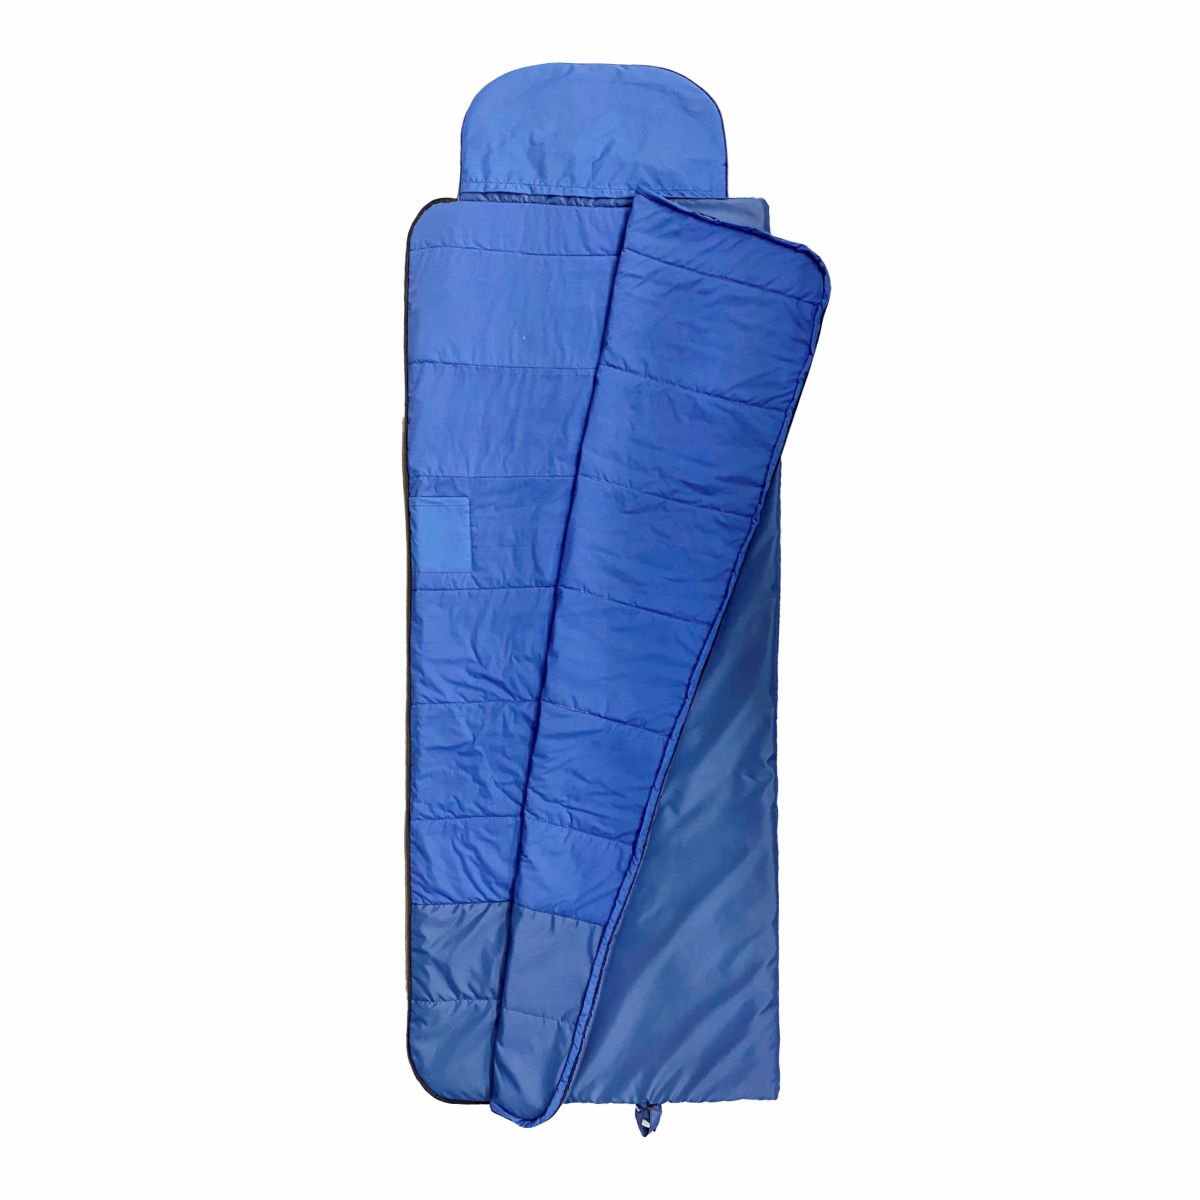 Спальный мешок Пелигрин спальный туристический легкий синий, правый